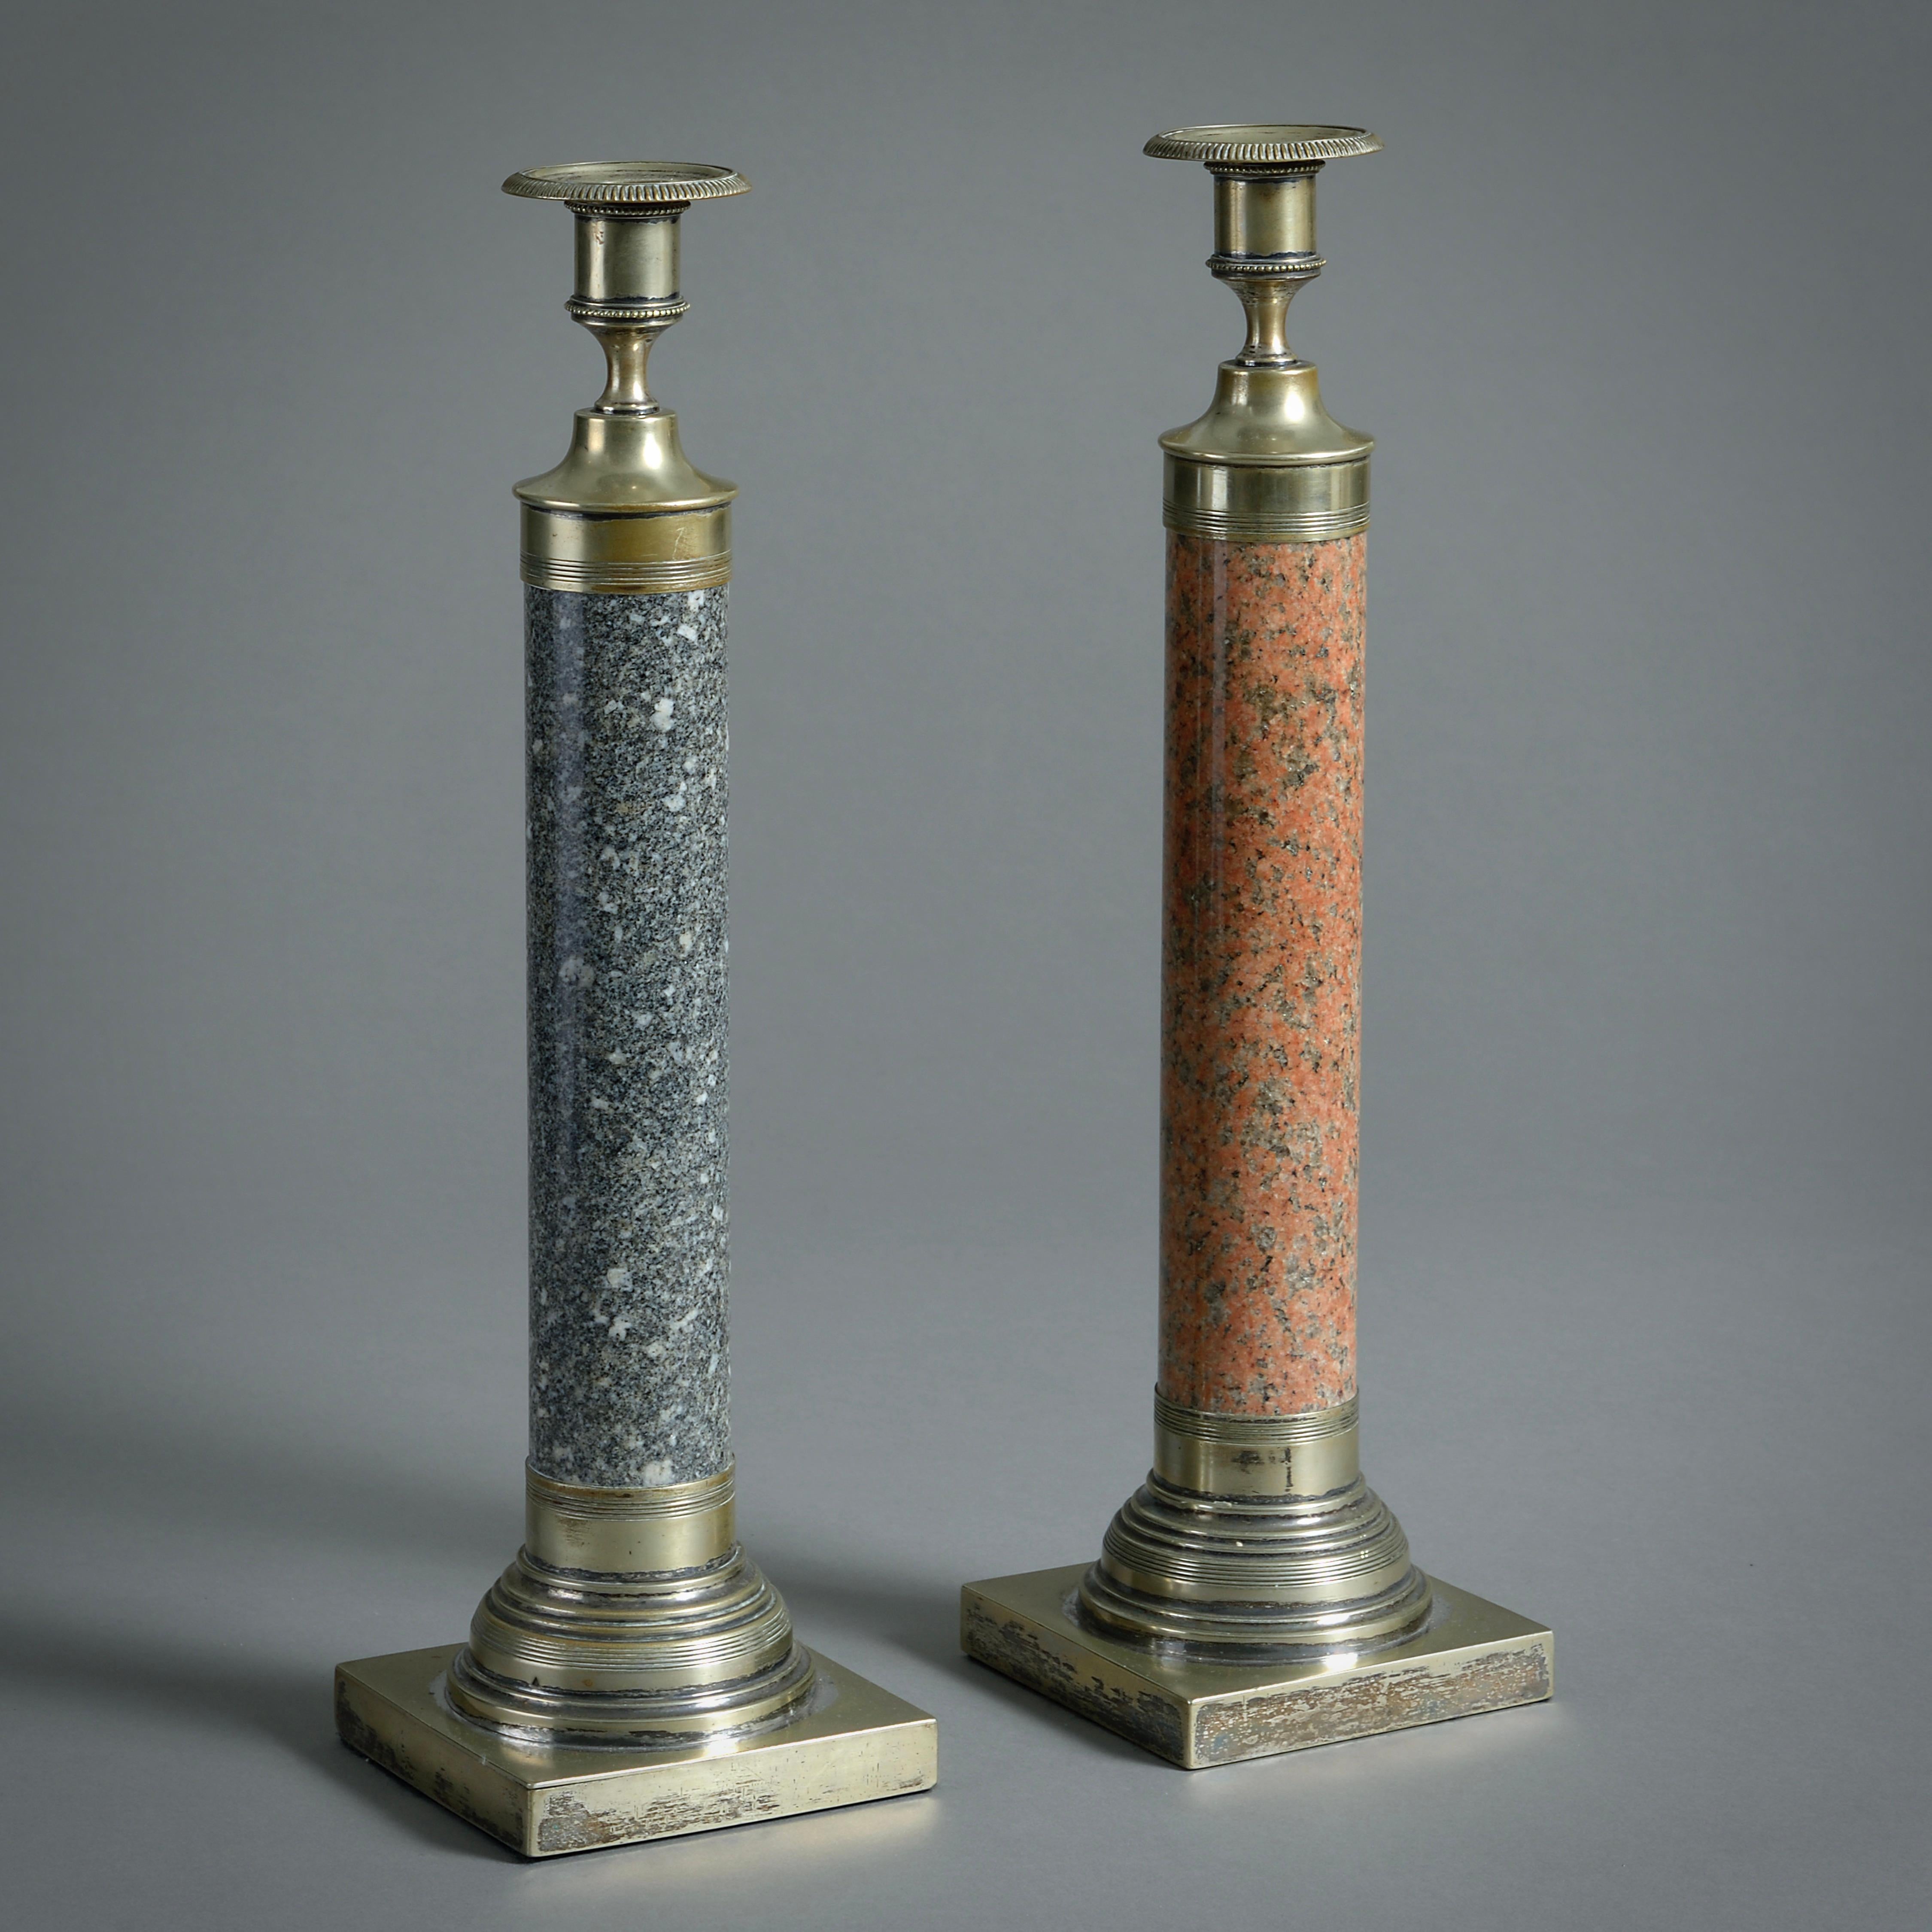 Pärchen schottischer Kerzenhalter aus Granit und Silber, CIRCA 1880.